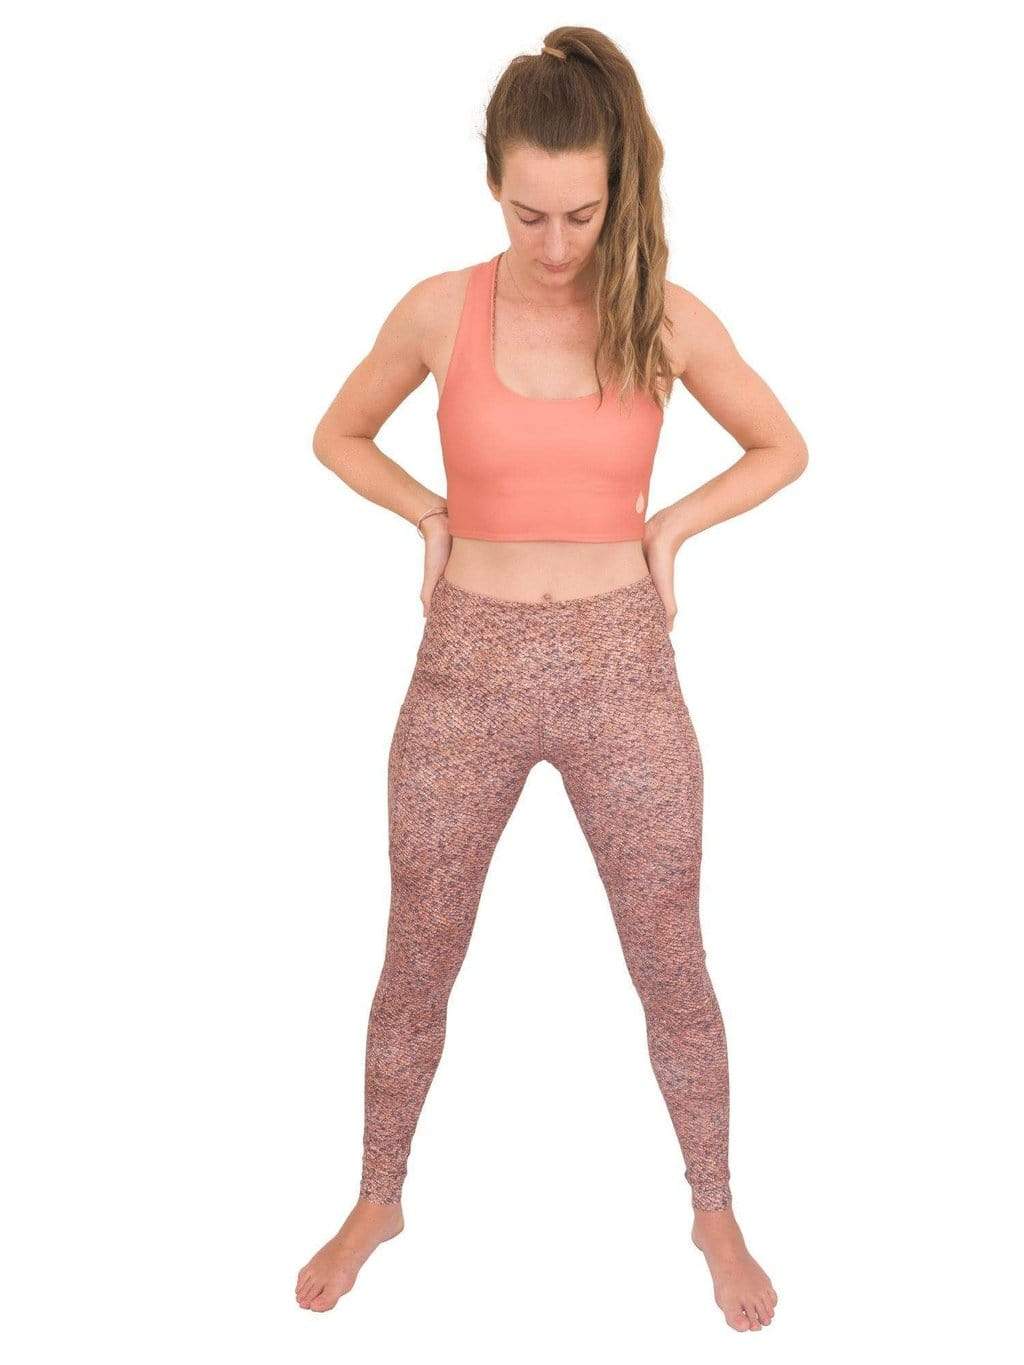 Victoria's Secret yoga pants, color: Ink Blot, Length: Short, Size: XS